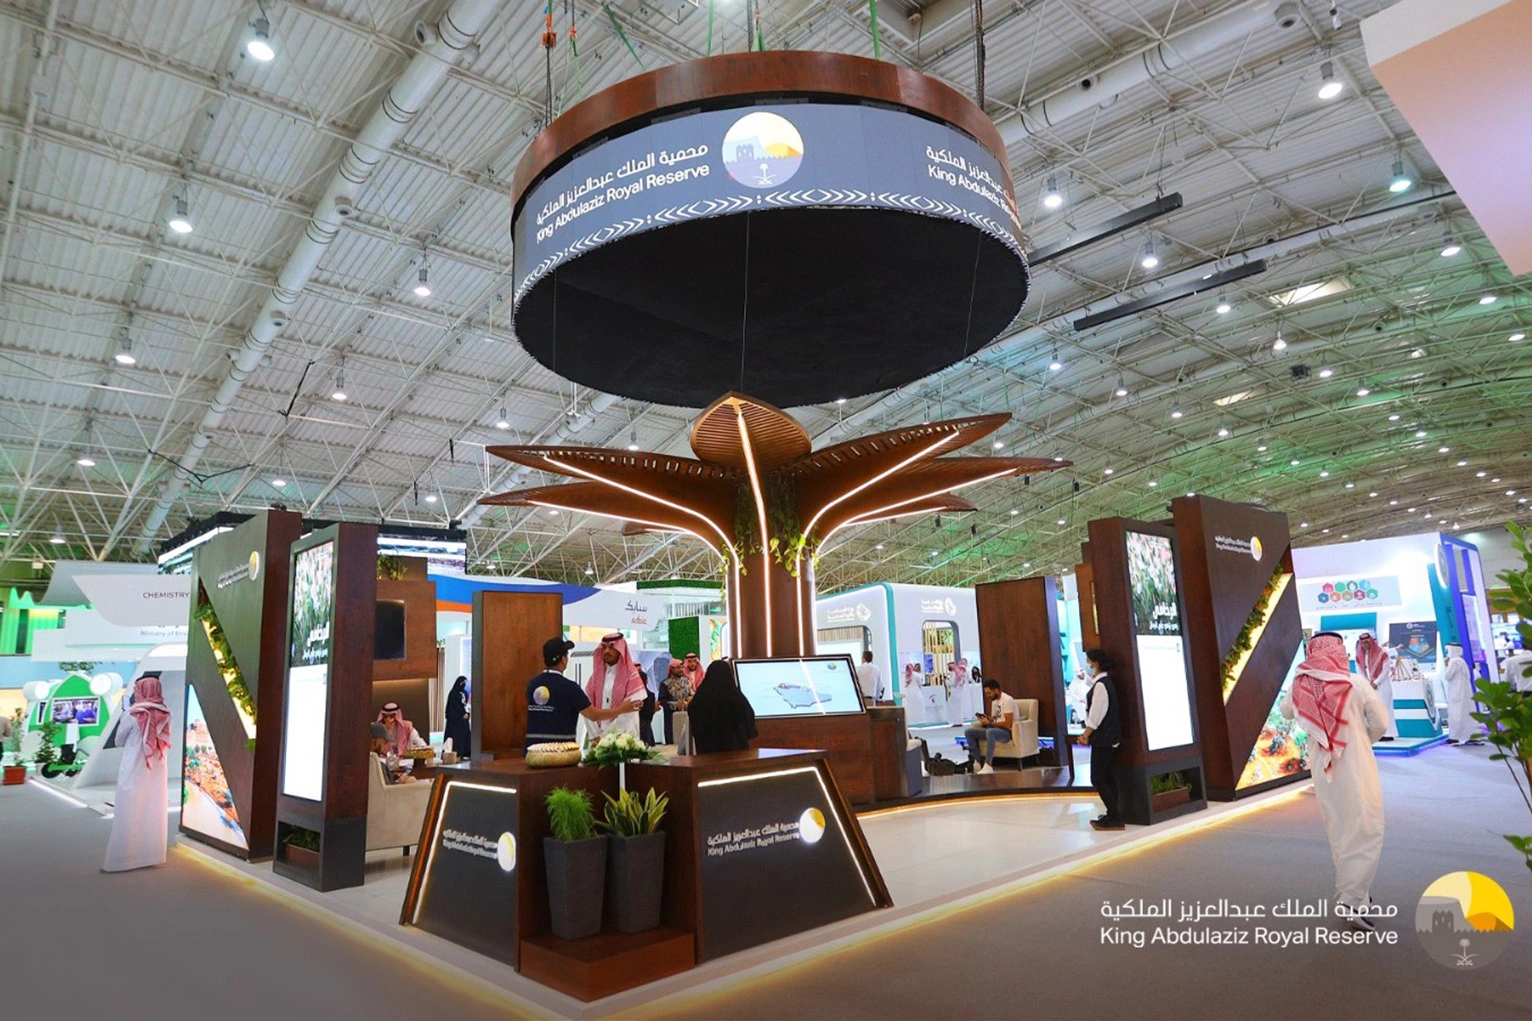 جناح محمية الملك عبدالعزيز الملكية - معرض تقنيات التشجير